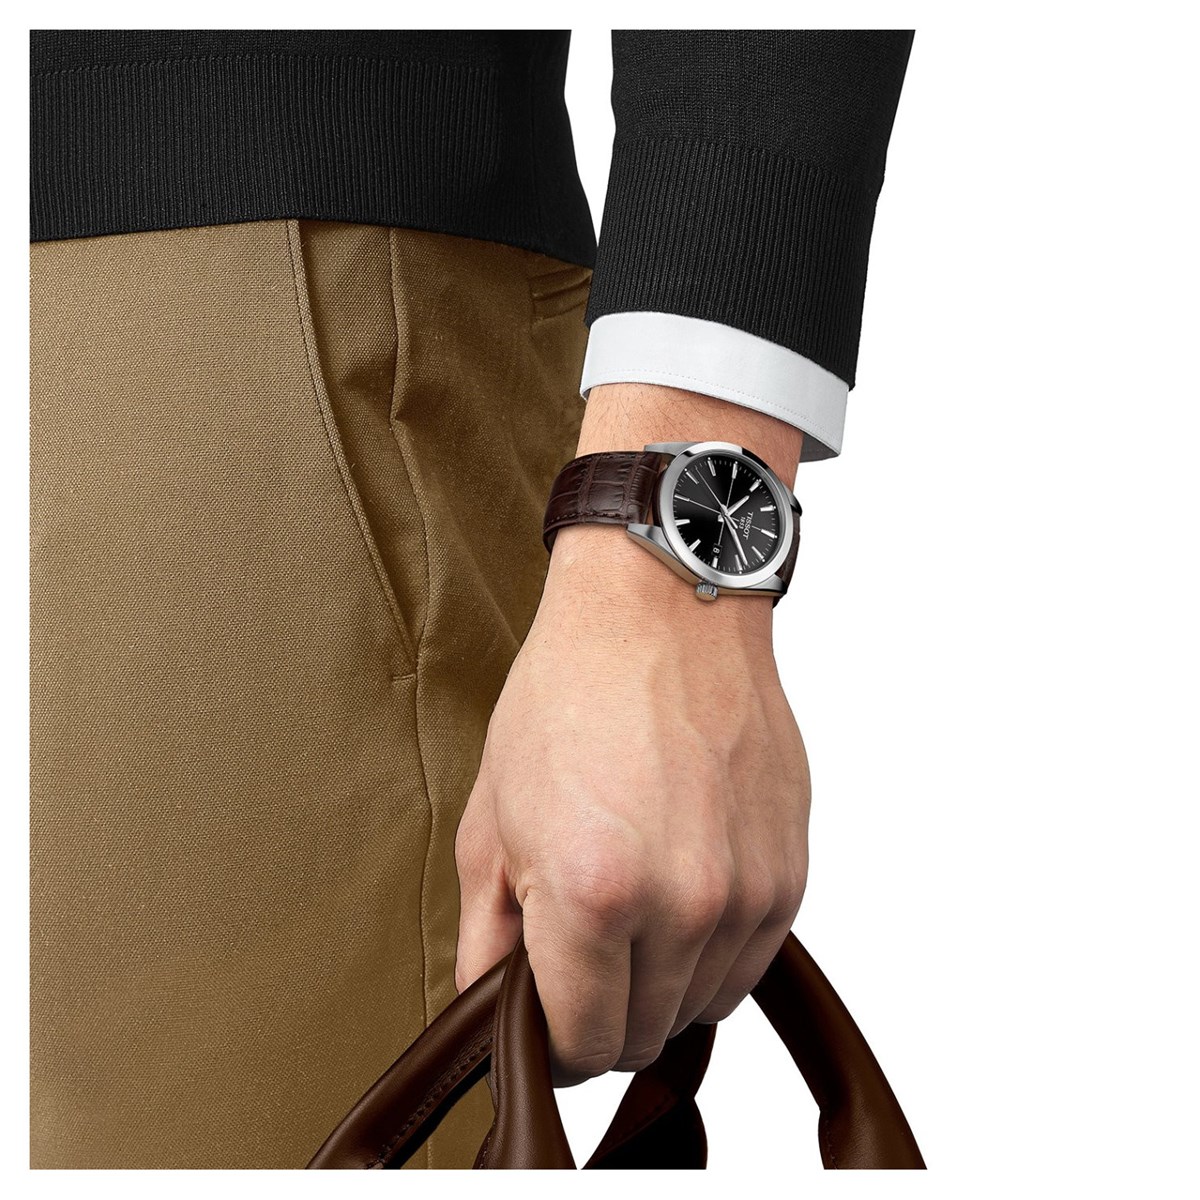 Montre Tissot Gentleman cuir brun cadran noir - vue 2